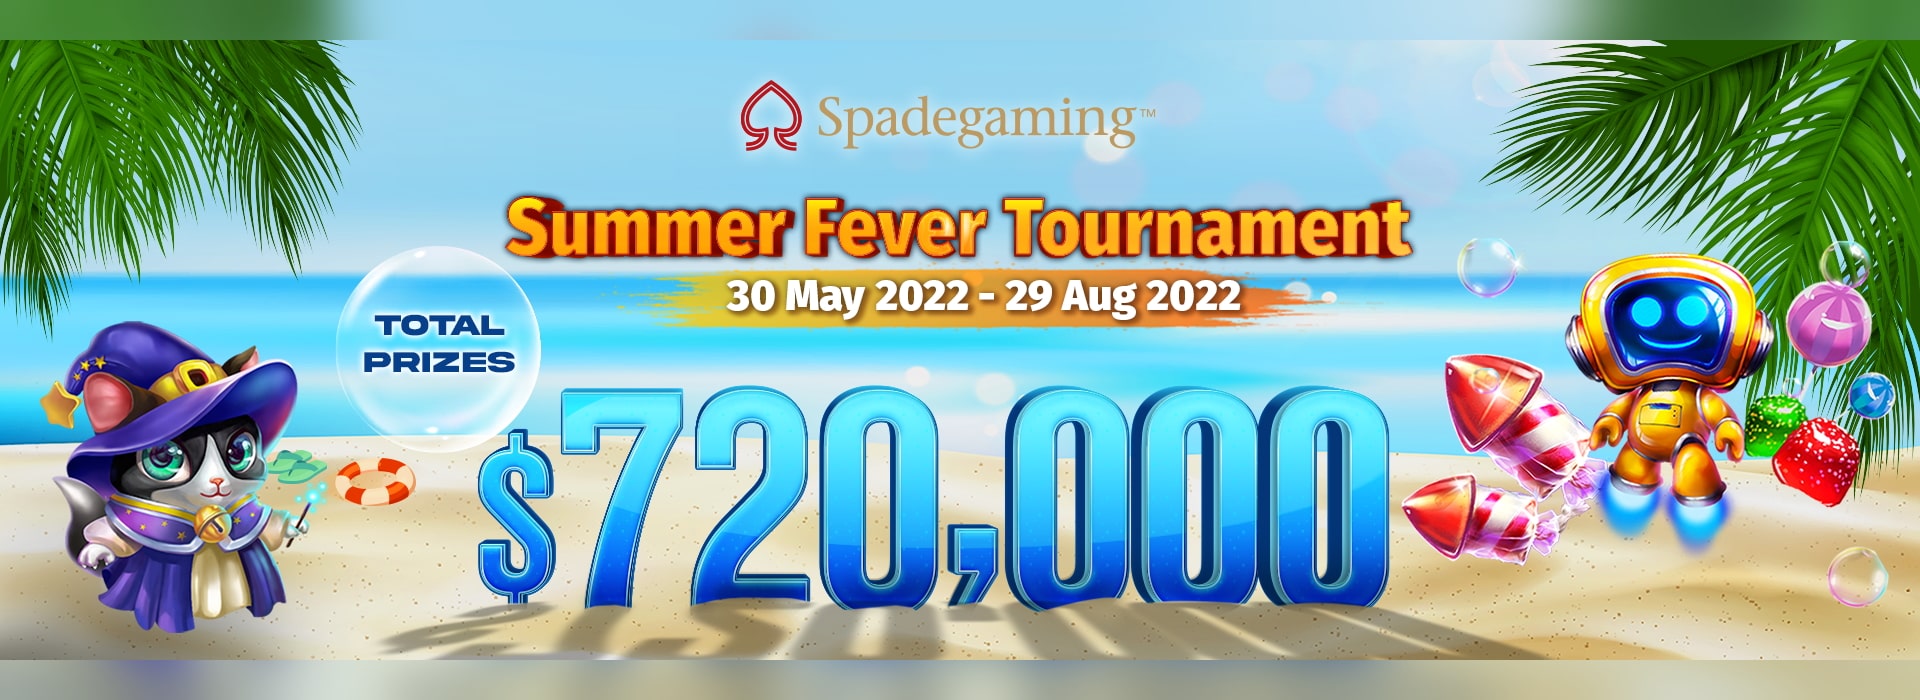 Spadegaming Summer Fever Tournament